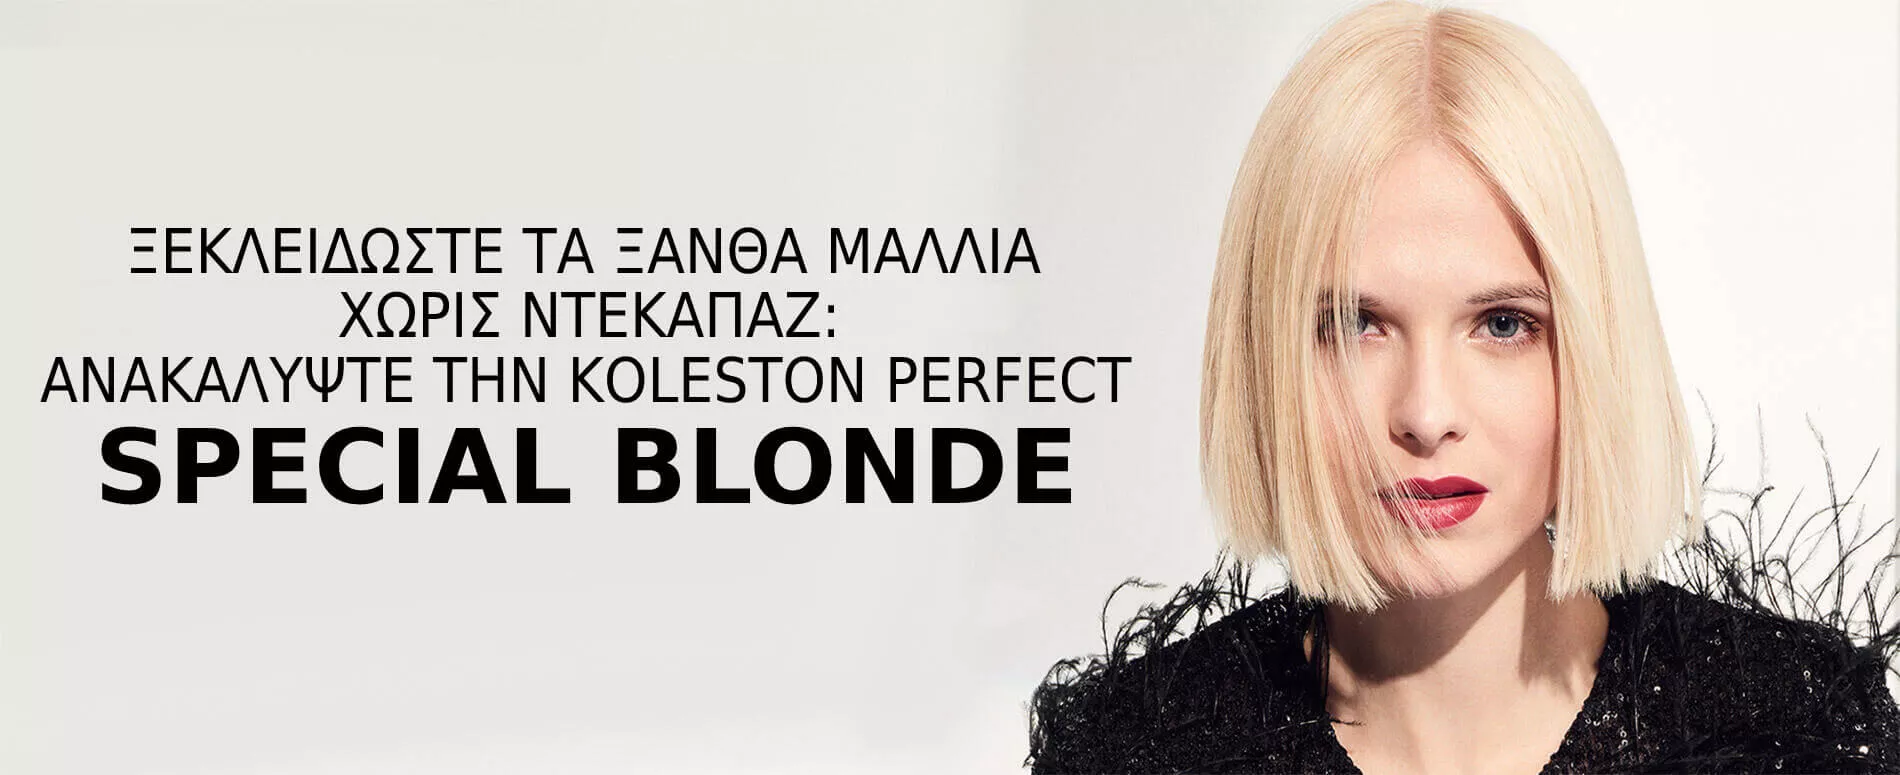 Μοντέλο με κοντά ξανθά μαλλιά στιλιζαρισμένα με το Special Blonde της Koleston Perfect